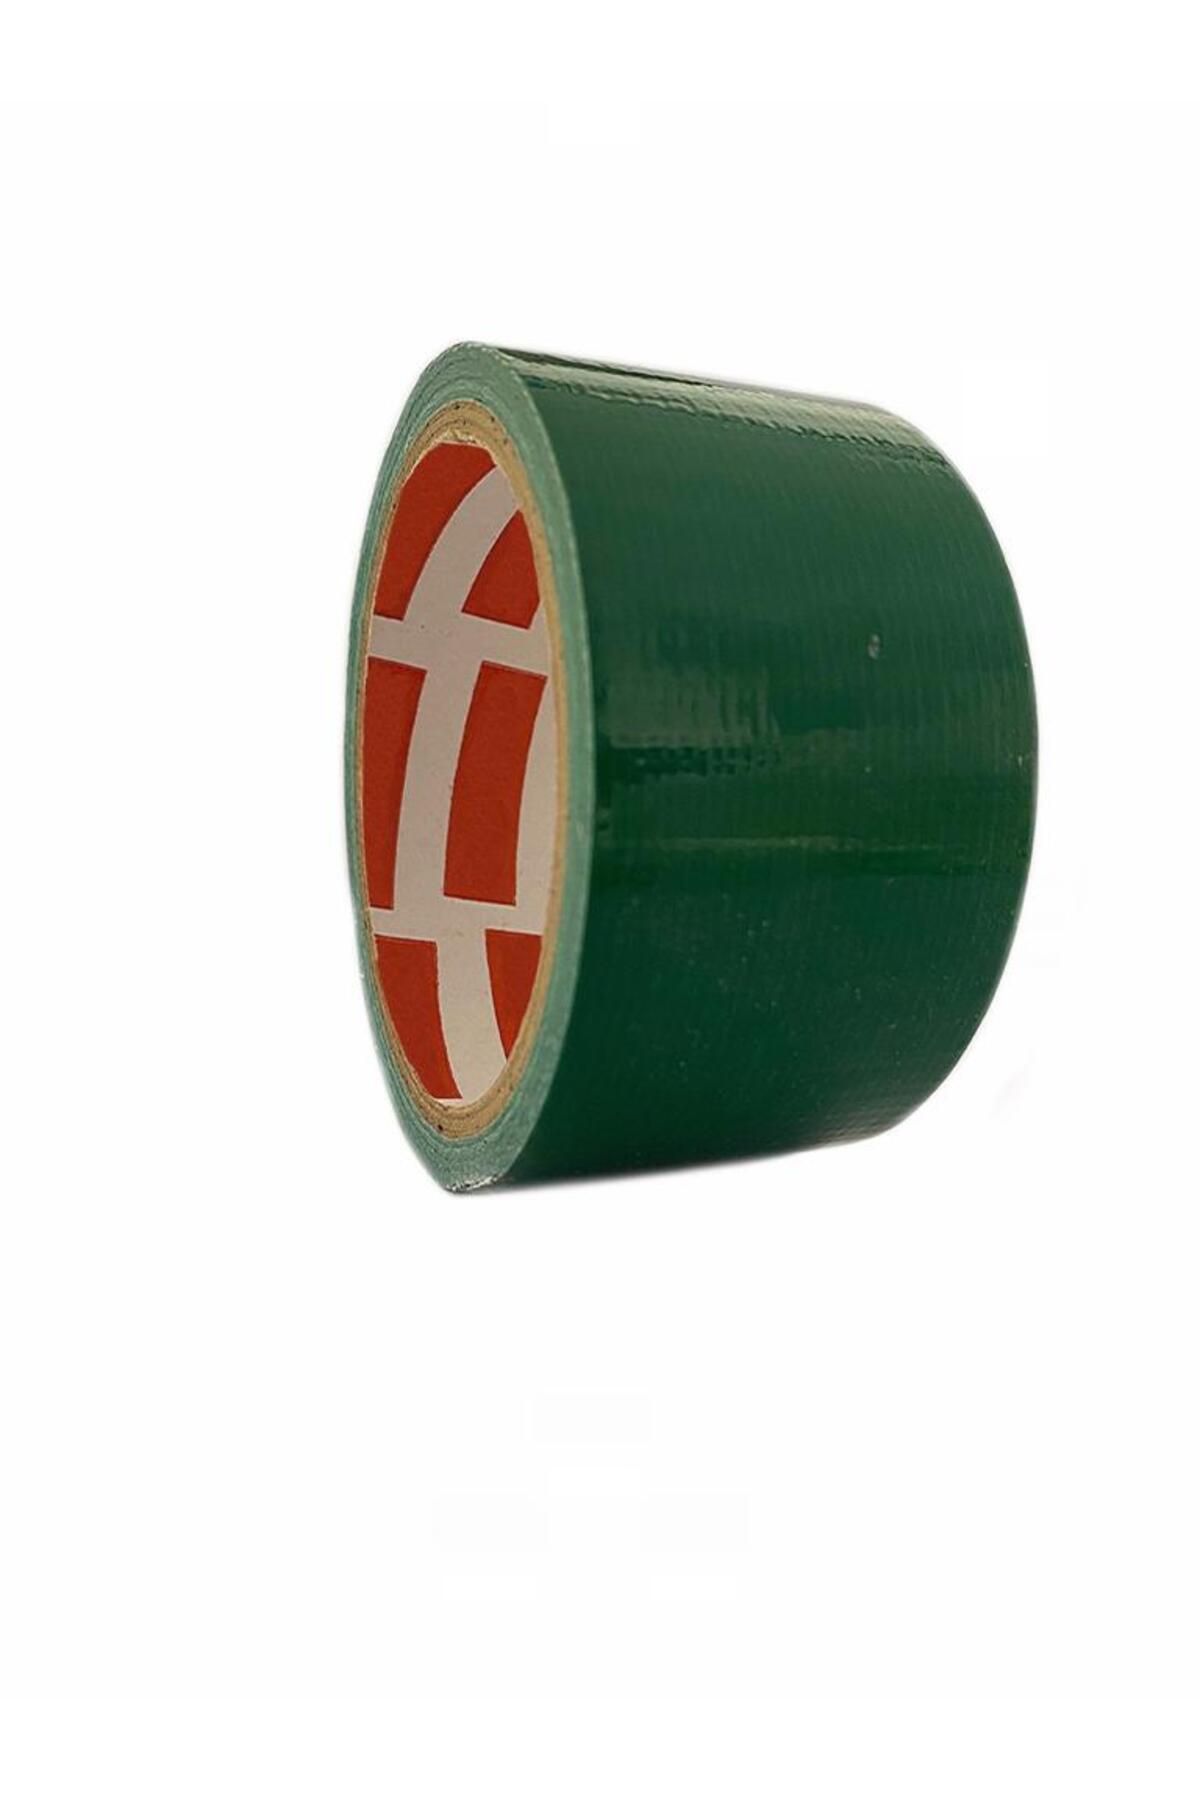 Genel Markalar Suya Dayanıklı Tamir Bandı - Yeşil 10mt Flex Tape (4172)